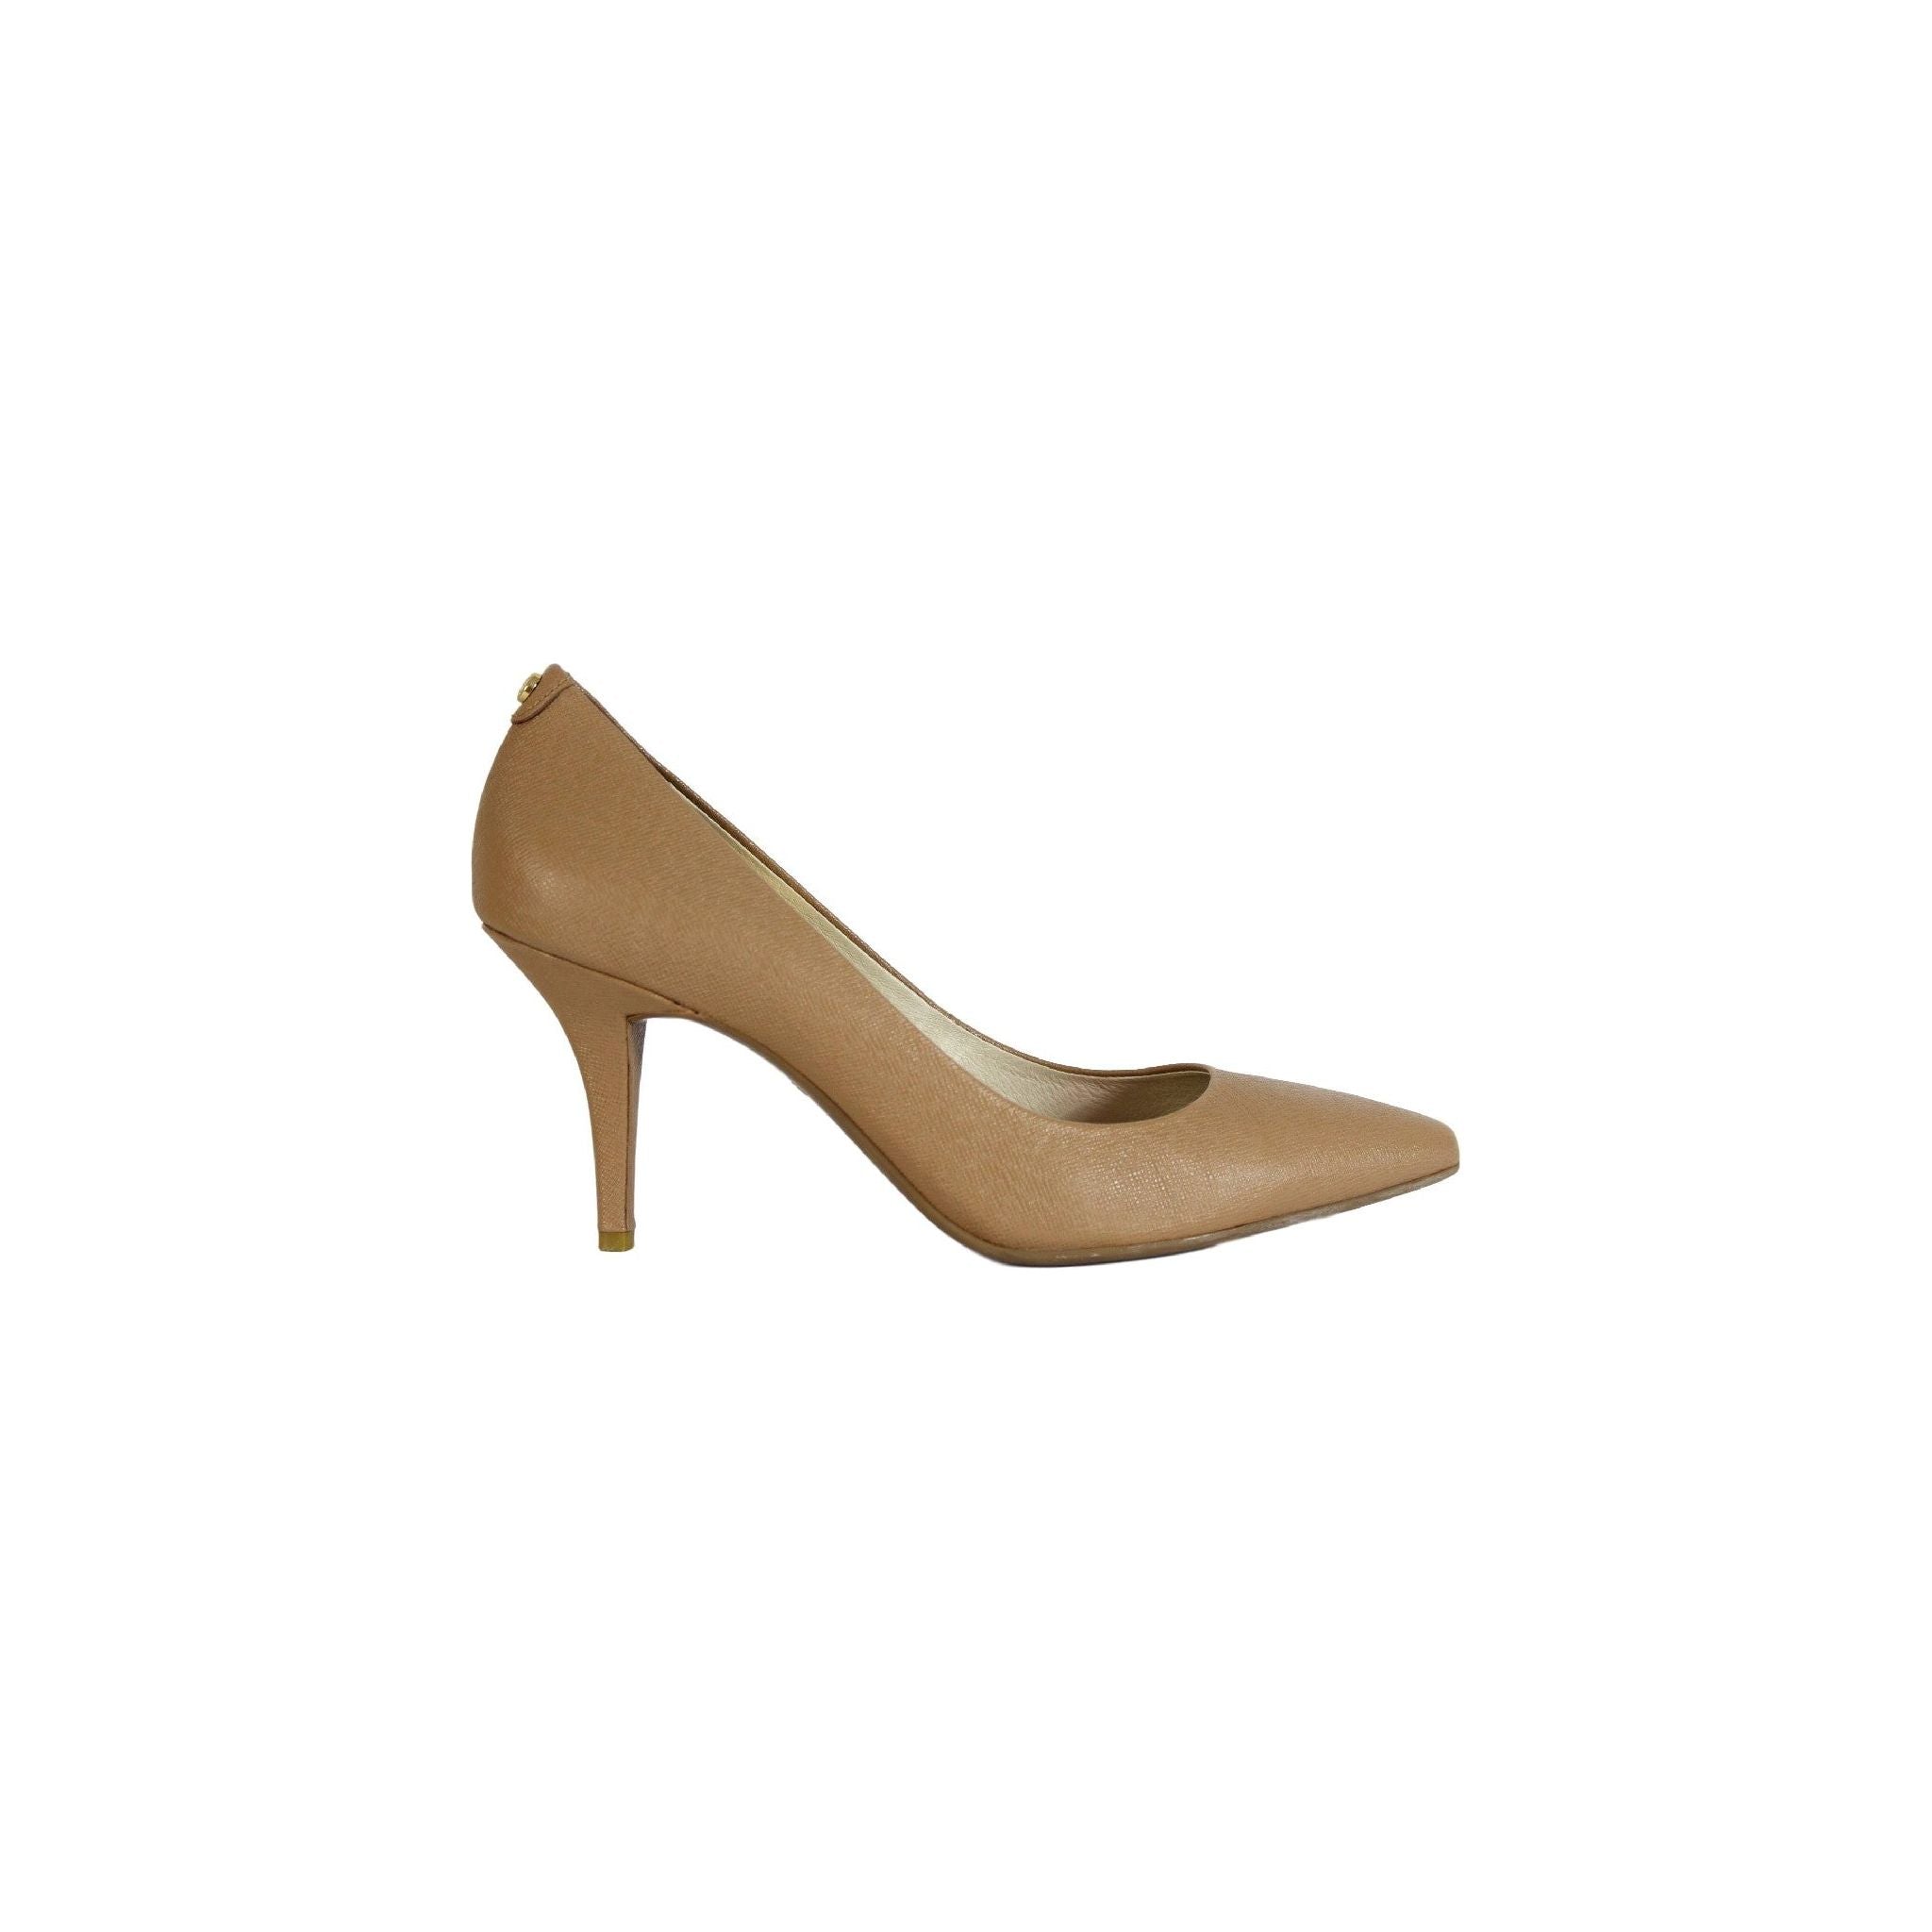 Michael Kors 2000s Heel Shoes Flex Mid Pump Leather | Dedè Couture